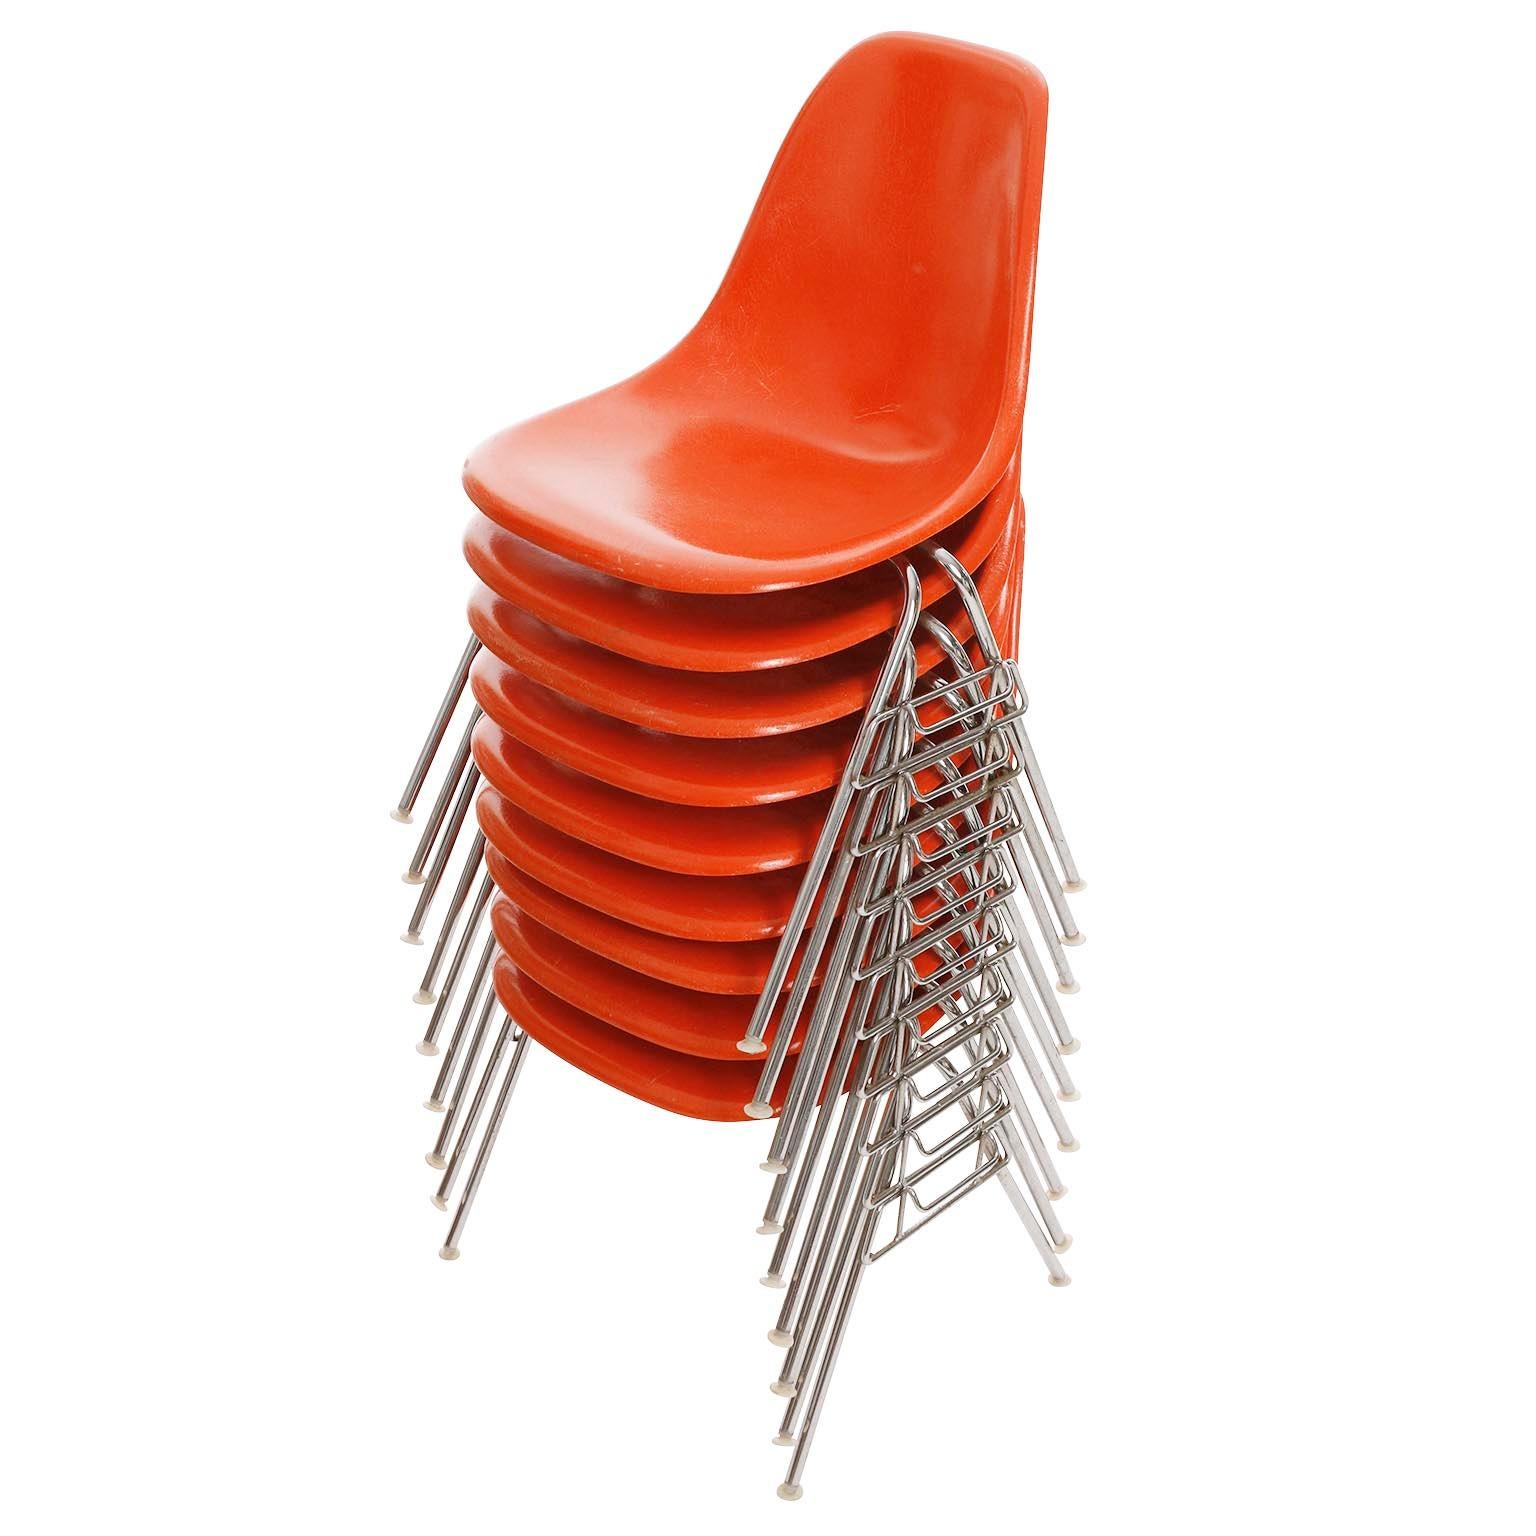 Einer von 18 stapelbaren Esszimmerstühlen von Charles & Ray Eames für Herman Miller, hergestellt in der Mitte des Jahrhunderts, um 1970 (Ende der 1960er oder Anfang der 1970er Jahre).
Die Stühle sind auf der Unterseite mit 